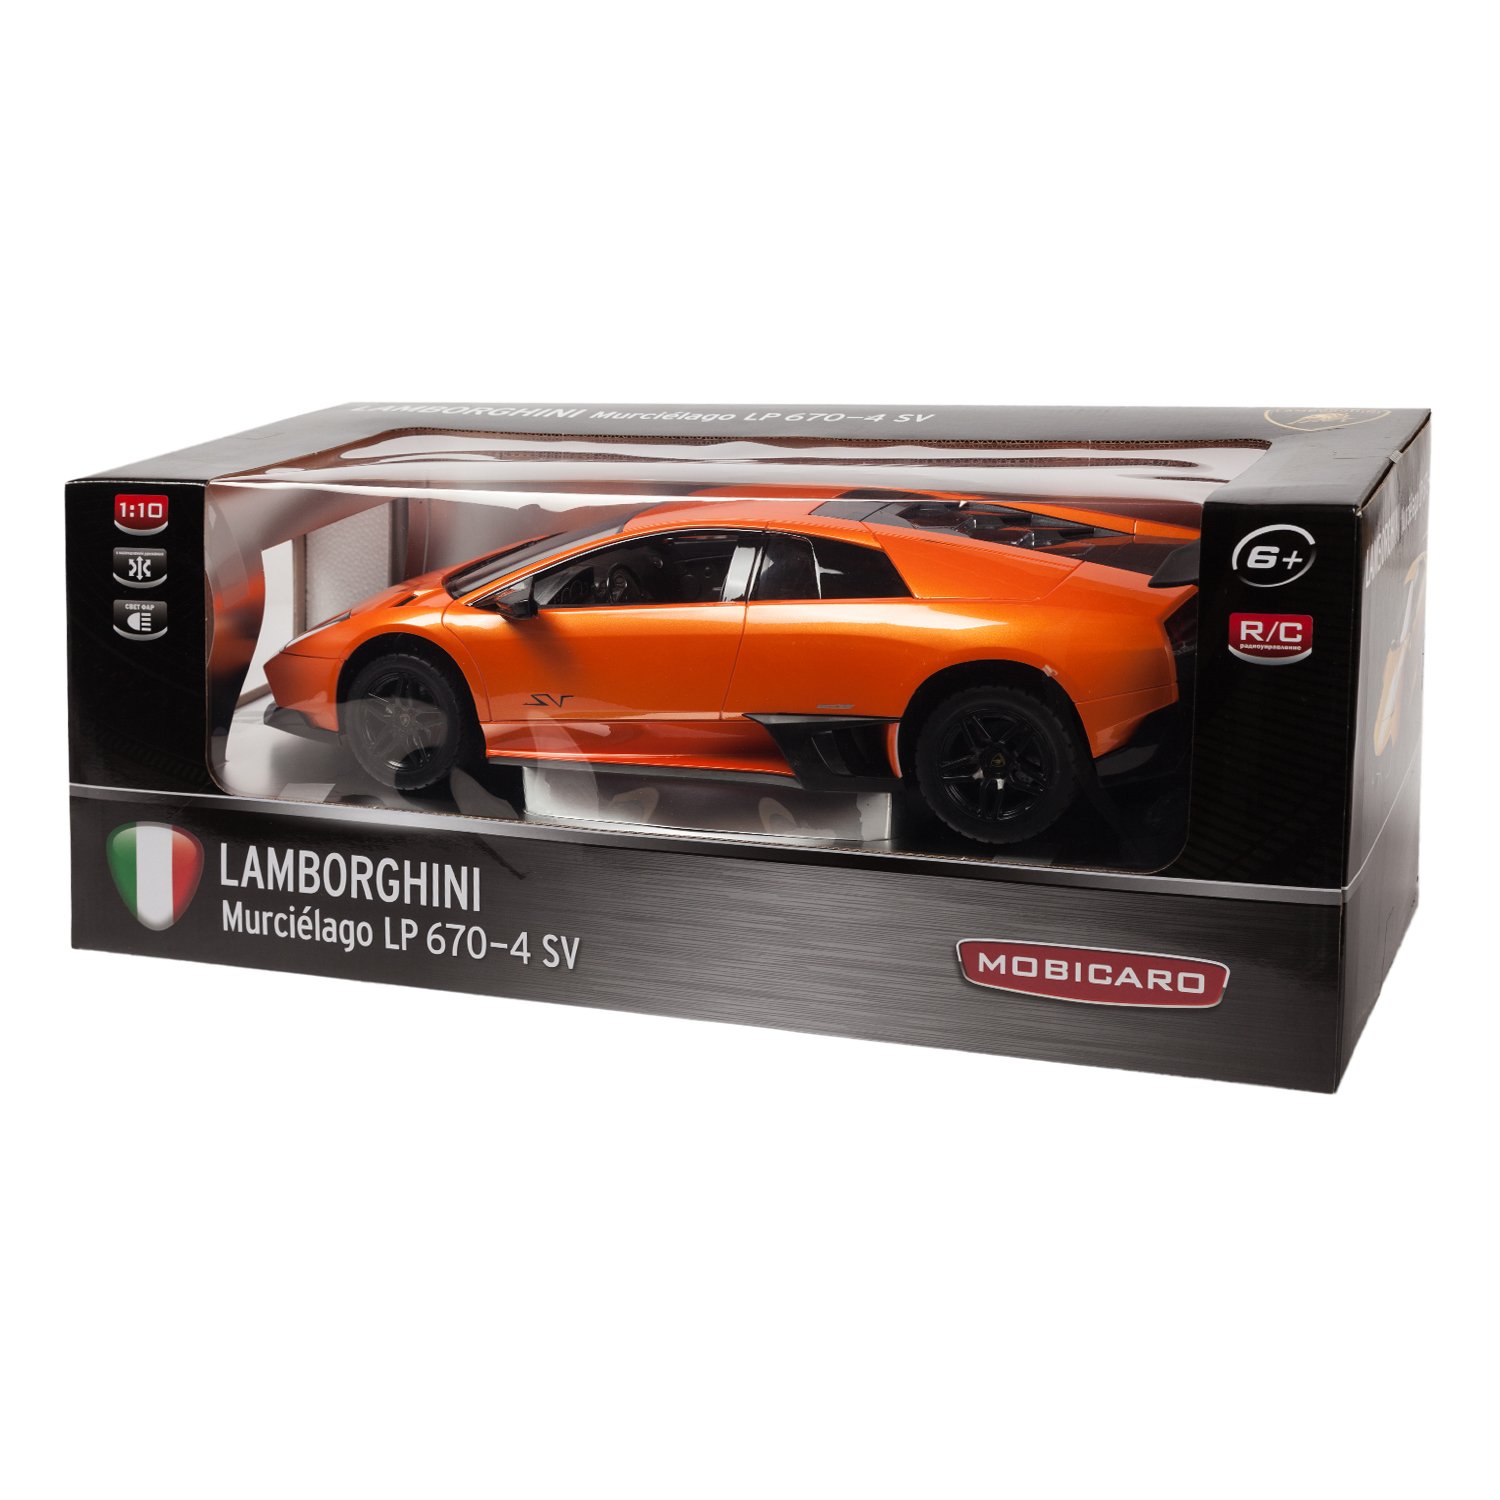 Машинка радиоуправляемая Mobicaro Lamborghini LP670 1:10 Оранжевая - фото 3